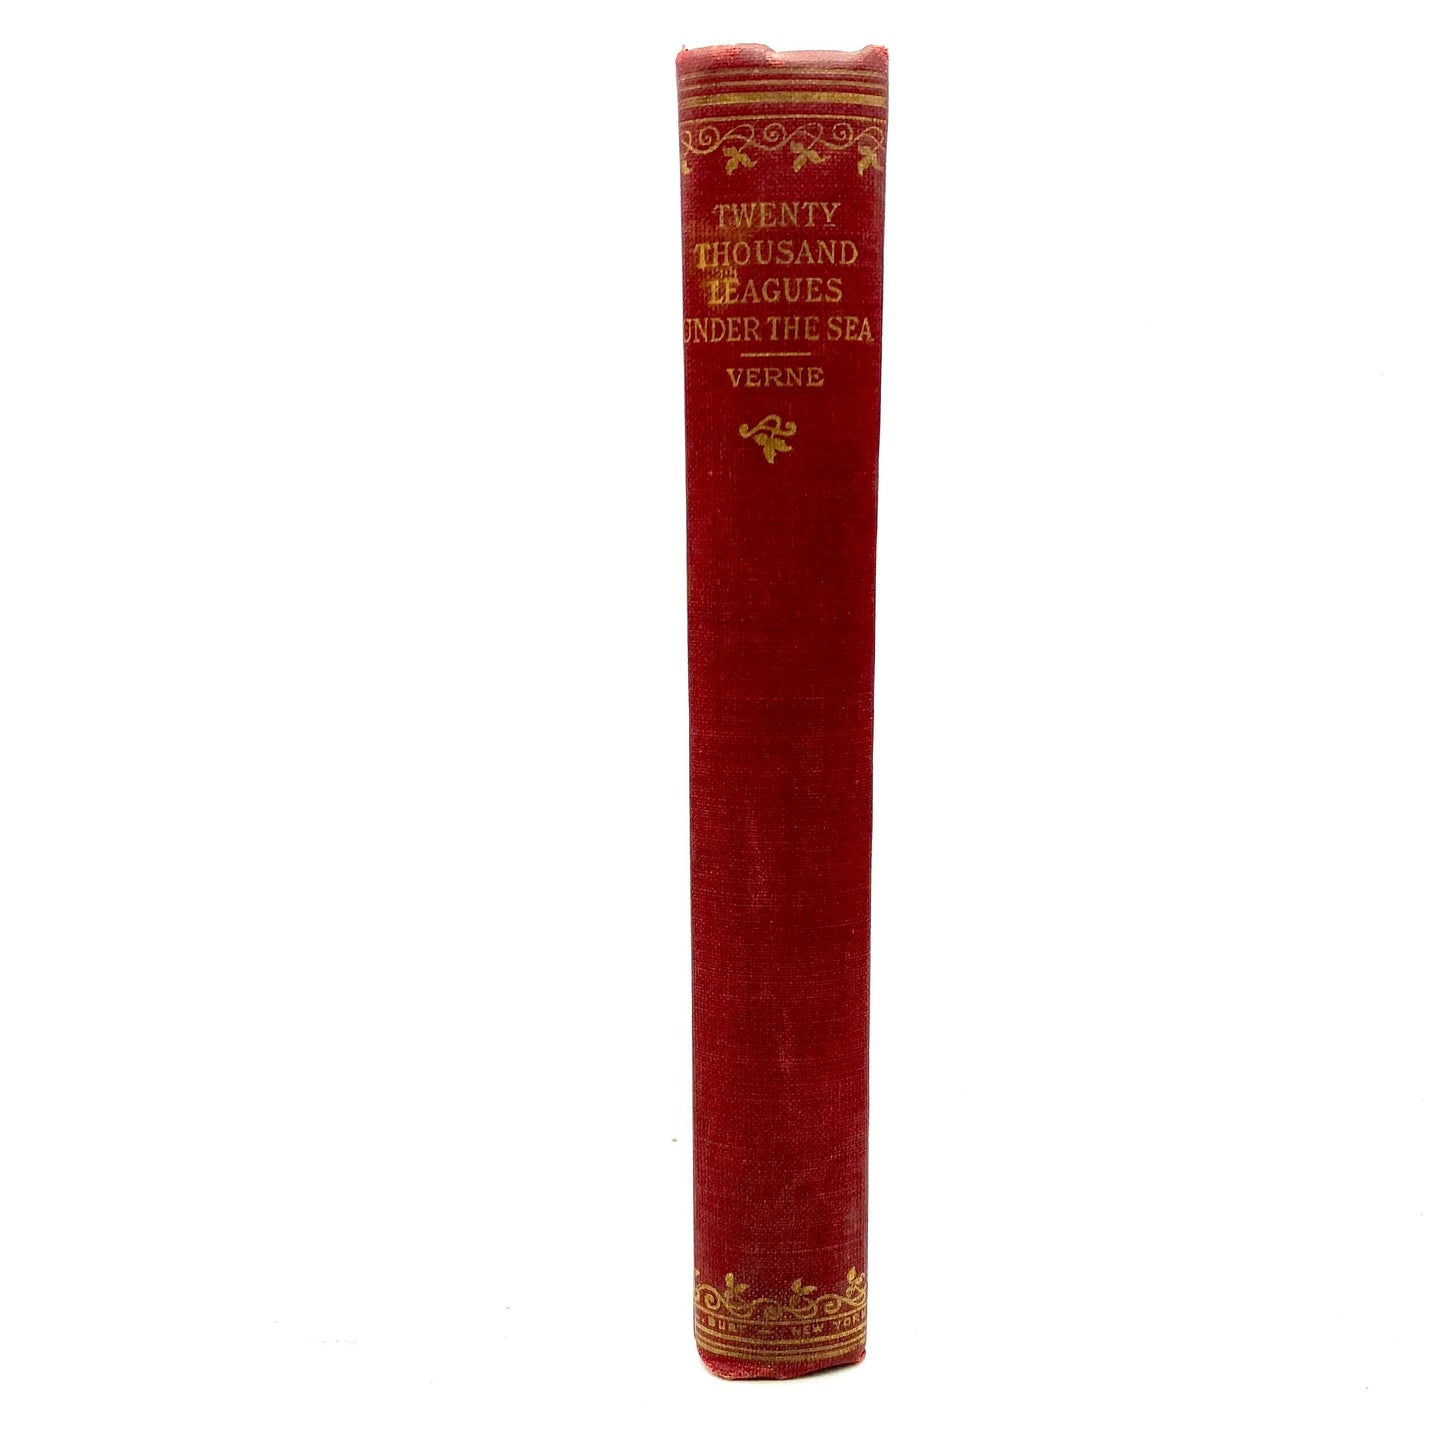 VERNE, Jules "Twenty Thousand Leagues Under the Sea" [A.L. Burt Company, c1902] - Buzz Bookstore